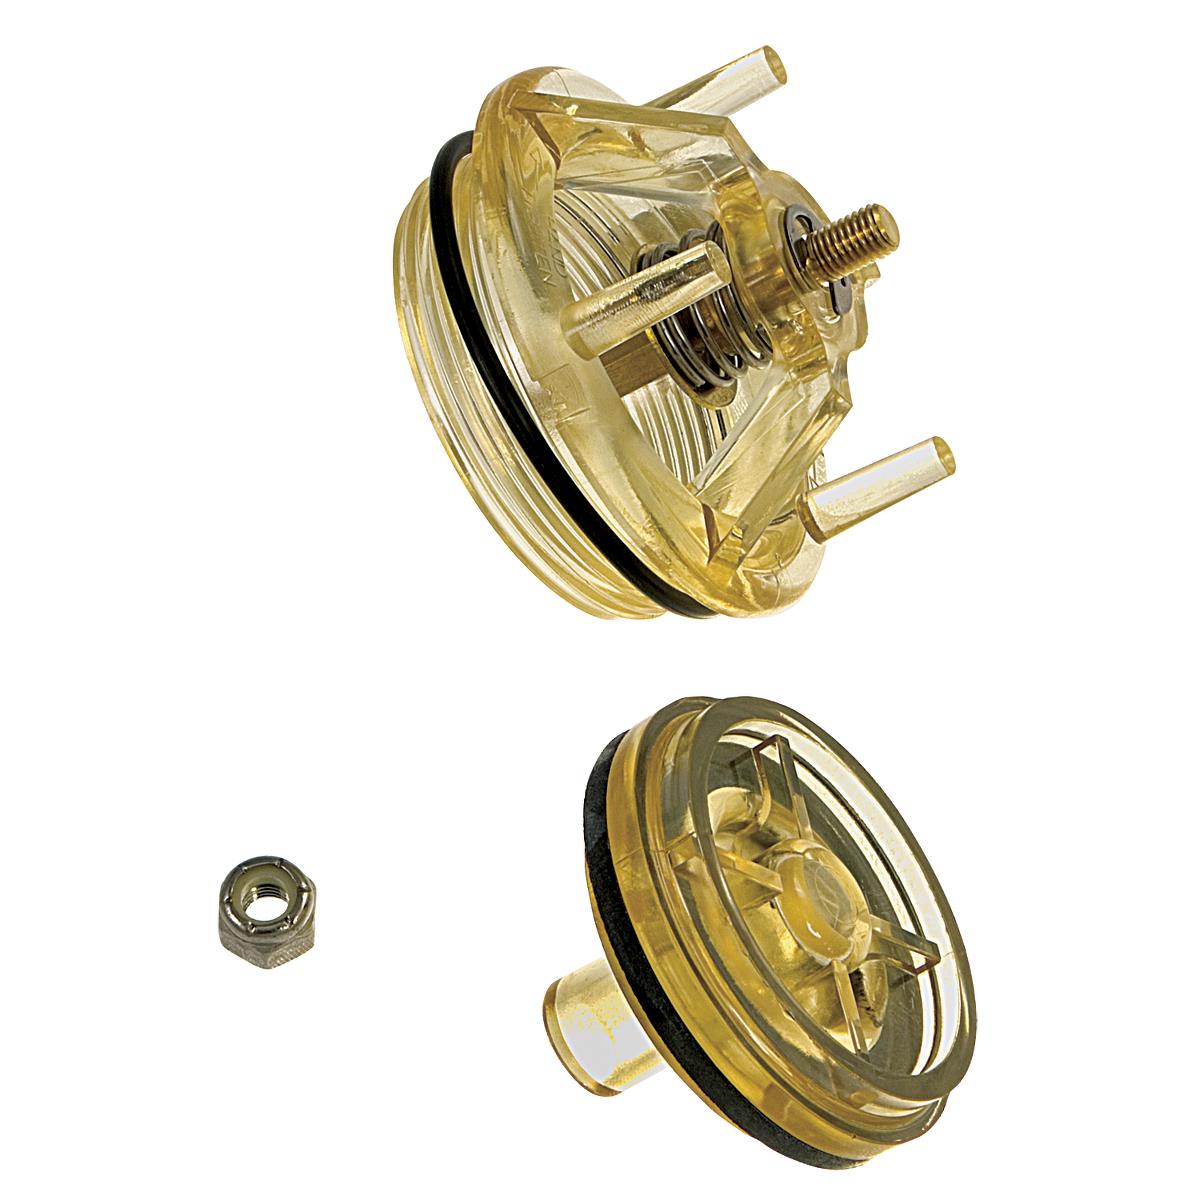 Woodford Brown Repair Kit for Faucet - Genuine Metal Wheel Handle - Brass  Valve Repair Kit in the Valve Repair Parts department at